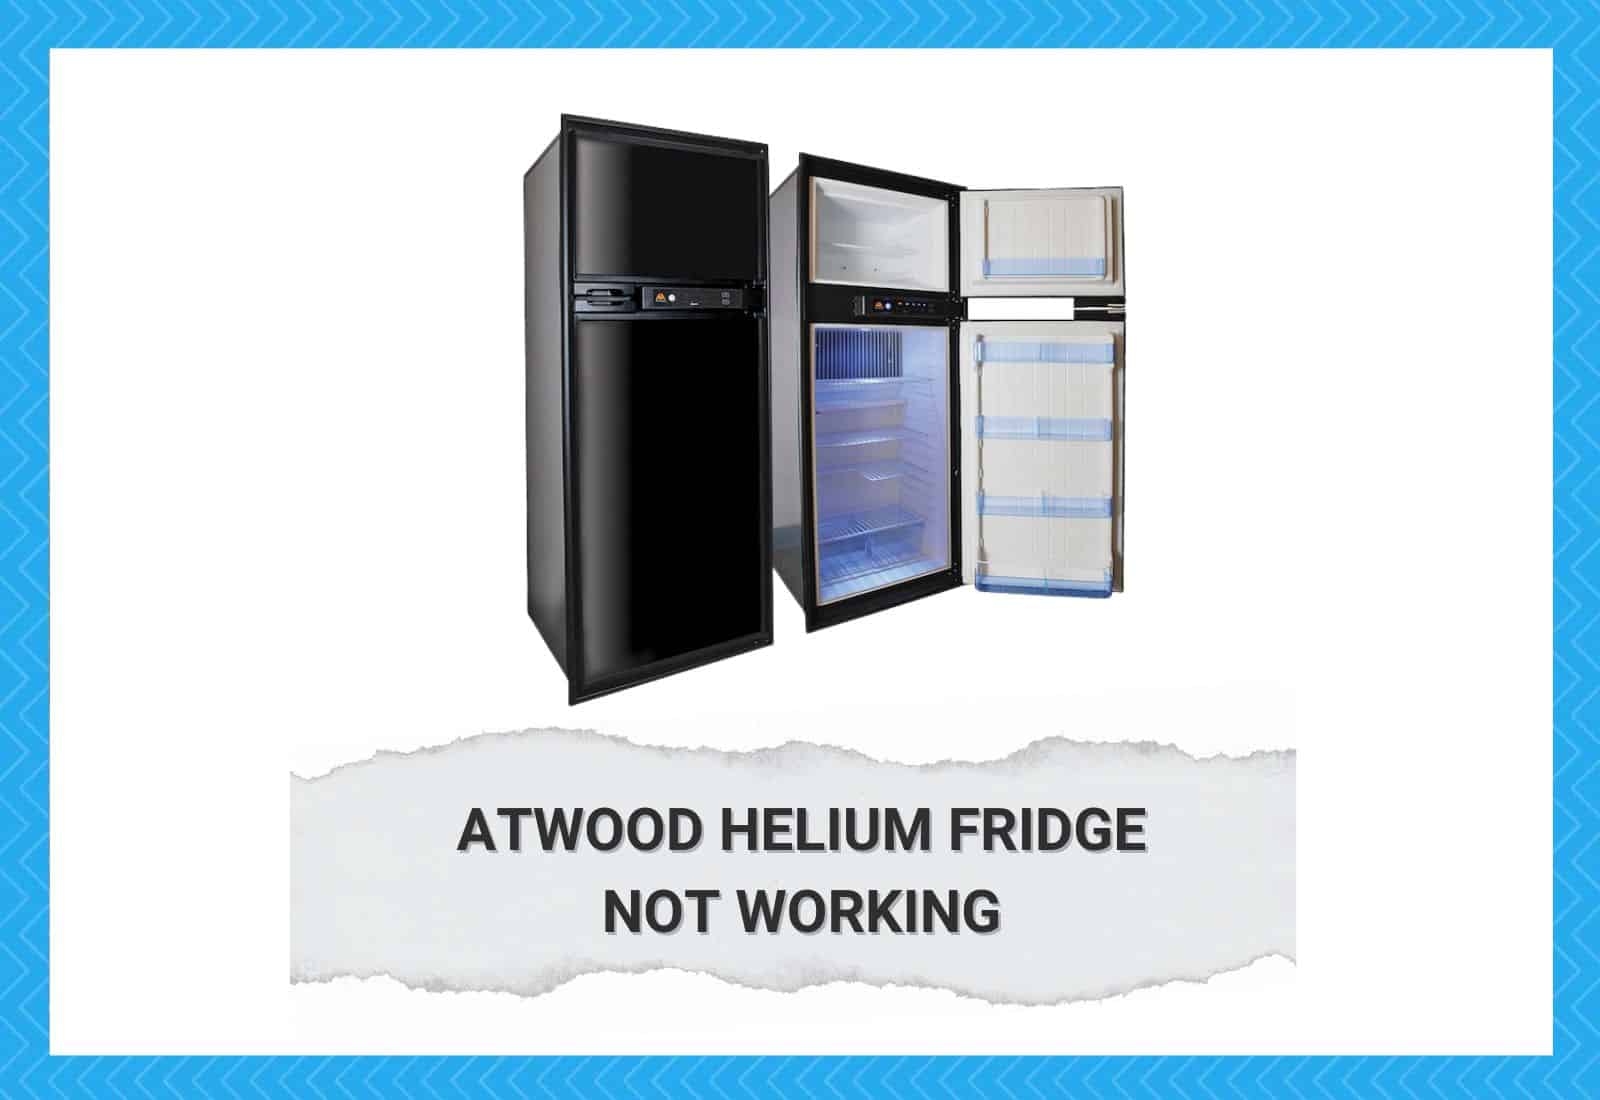 Atwood Helium Fridge Not Working